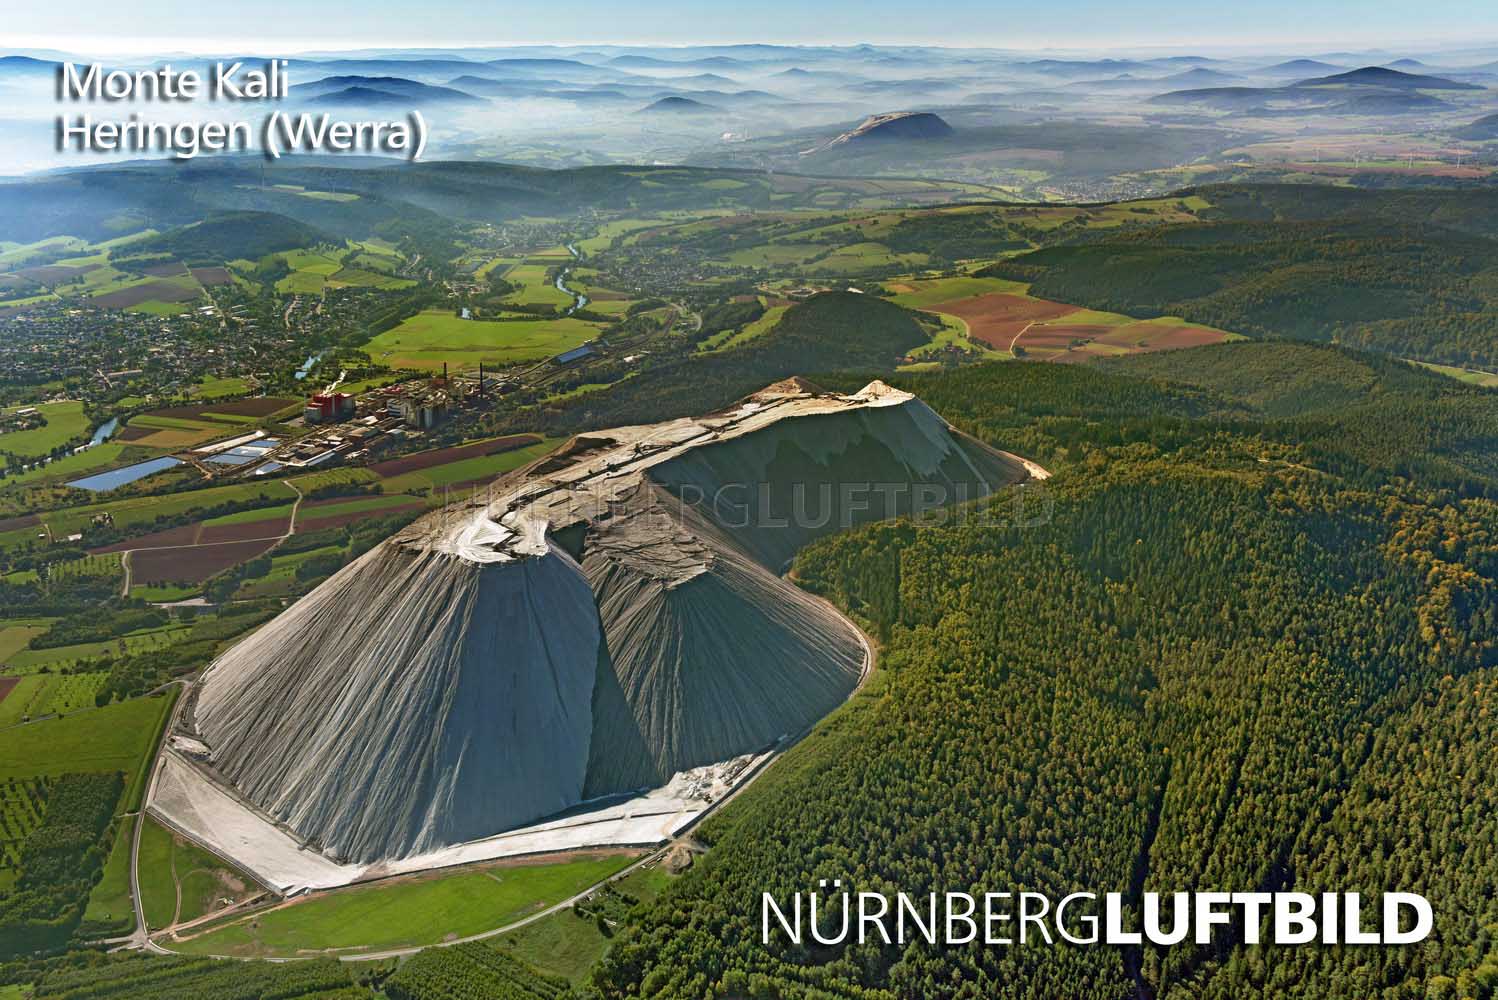 Monte Kali, Heringen, Werra, Luftbild